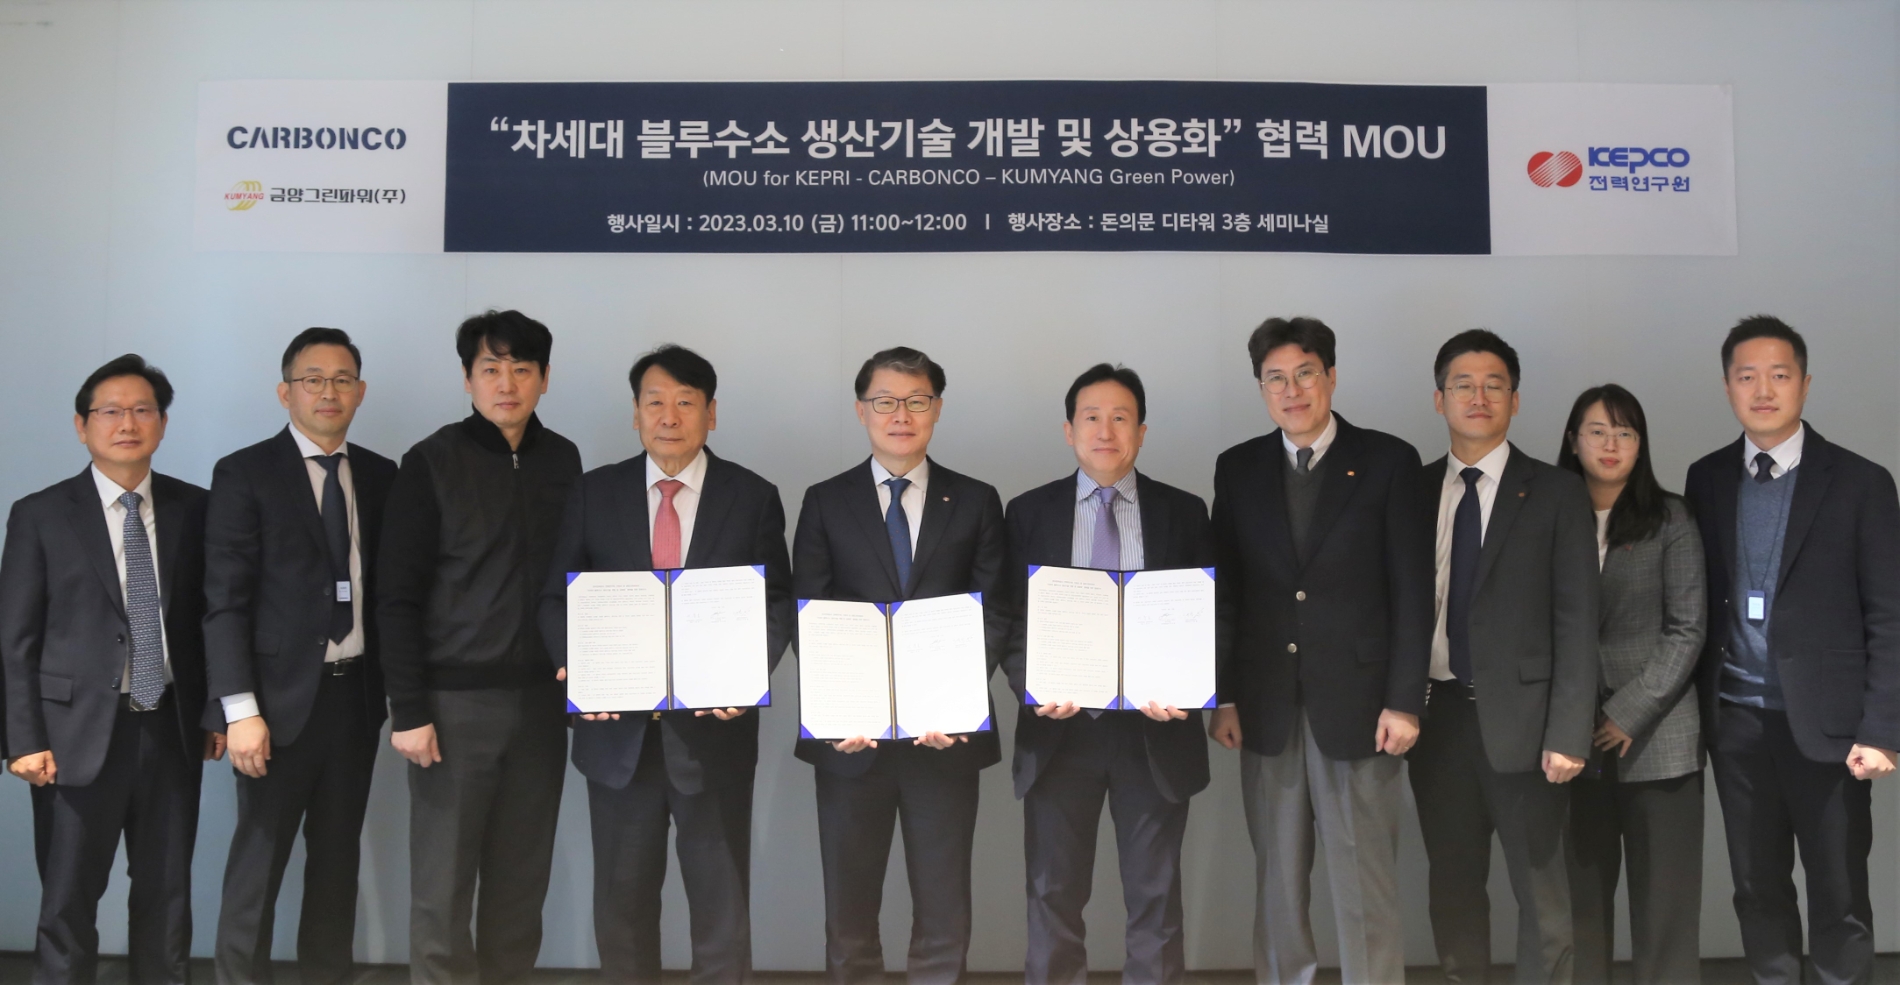 카본코와 한국전력공사 전력연구원 및 금양그린파워 관계자들이 ‘차세대 블루수소 생산기술 개발 및 상용화’를 위한 협약을 체결했다./사진제공=DL이앤씨